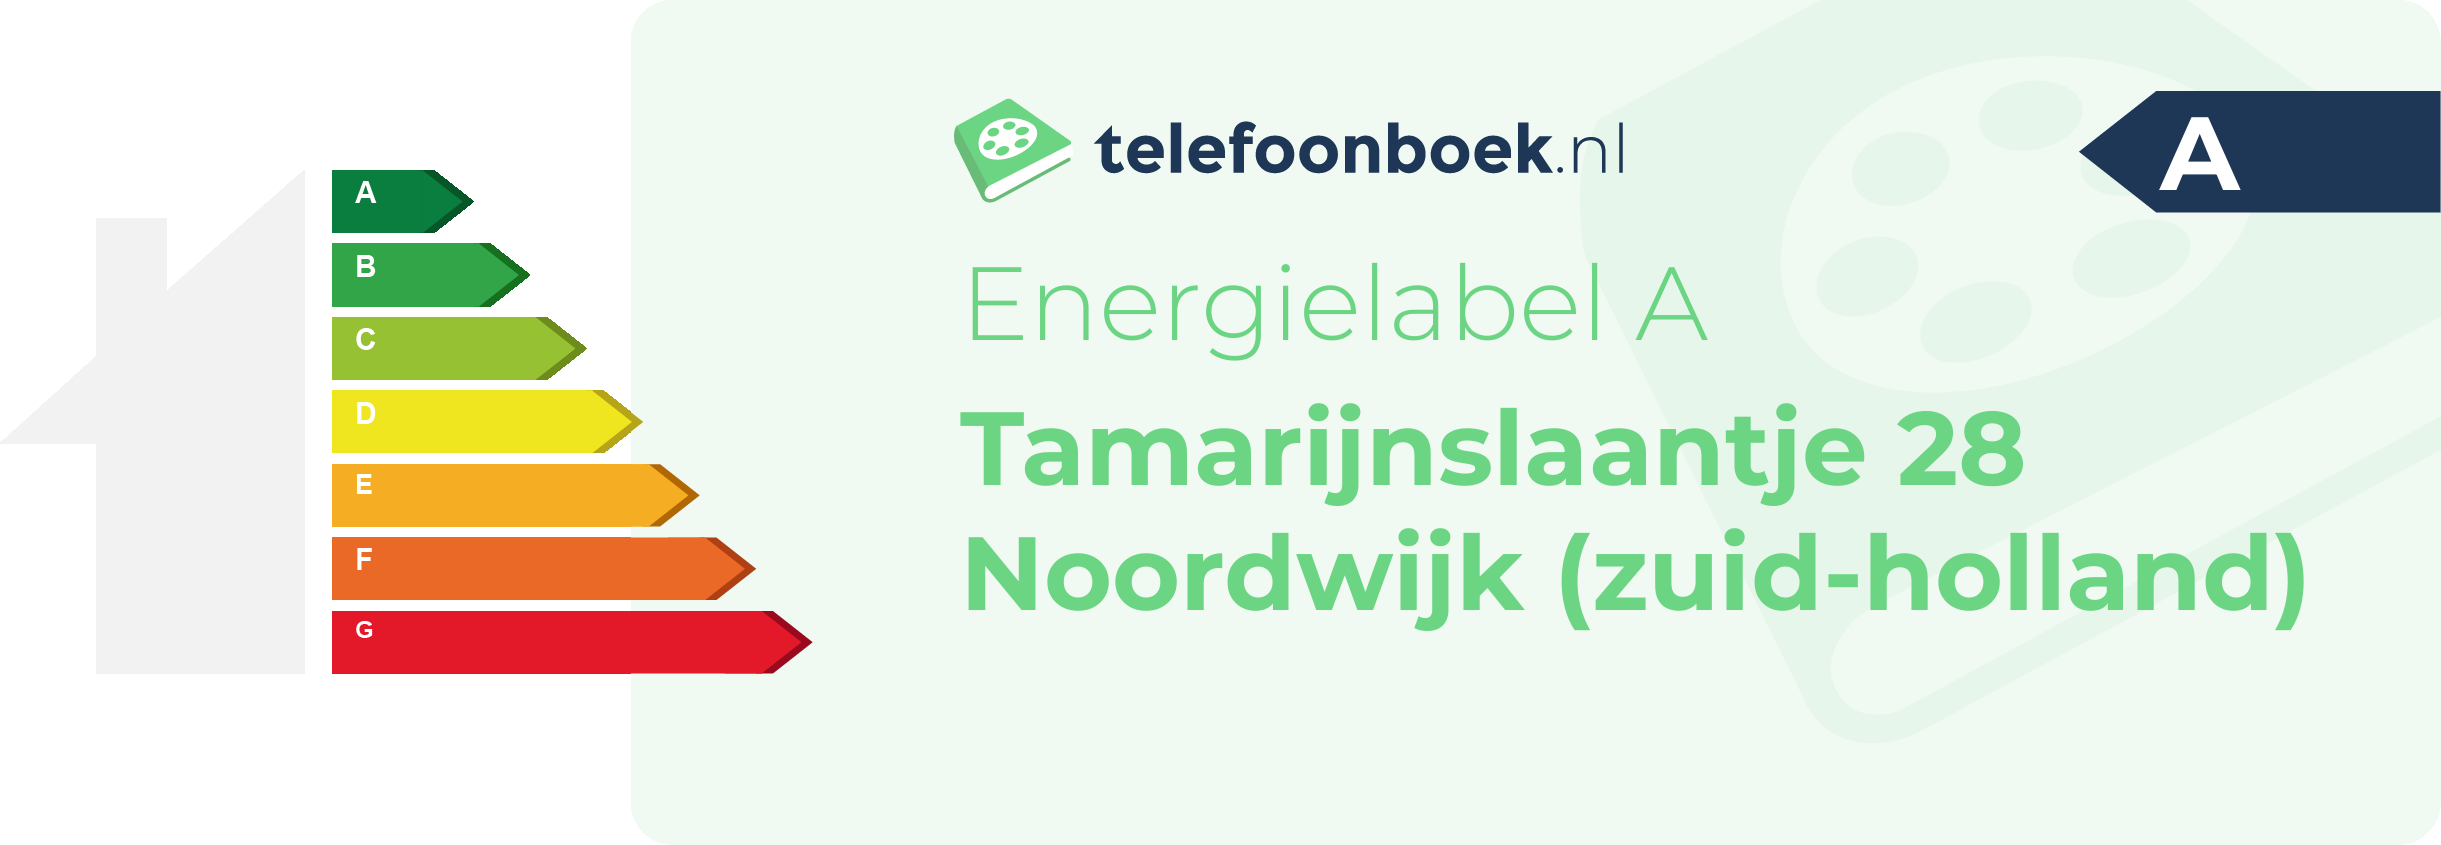 Energielabel Tamarijnslaantje 28 Noordwijk (Zuid-Holland)